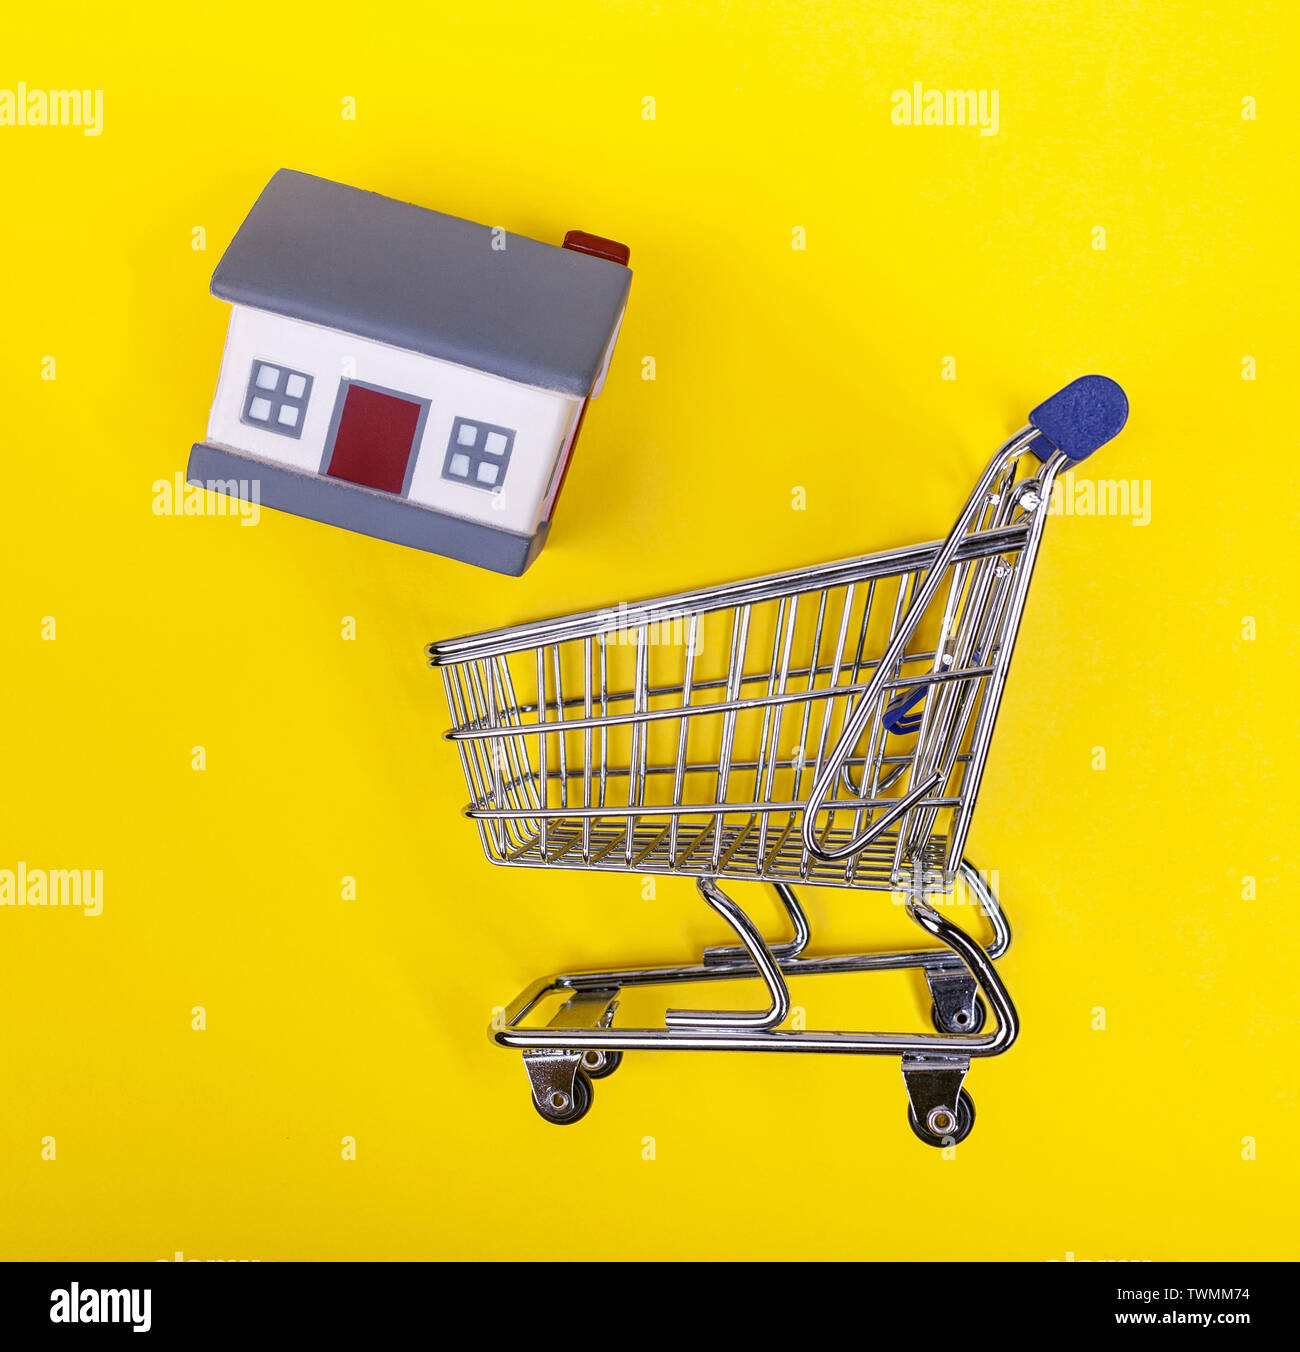 Ein Supermarkt Warenkorb mit Gummi Häuser auf einem gelben Hintergrund. Das Konzept der Home Shopping und Marketing, Handel und Gewerbe. Stockfoto